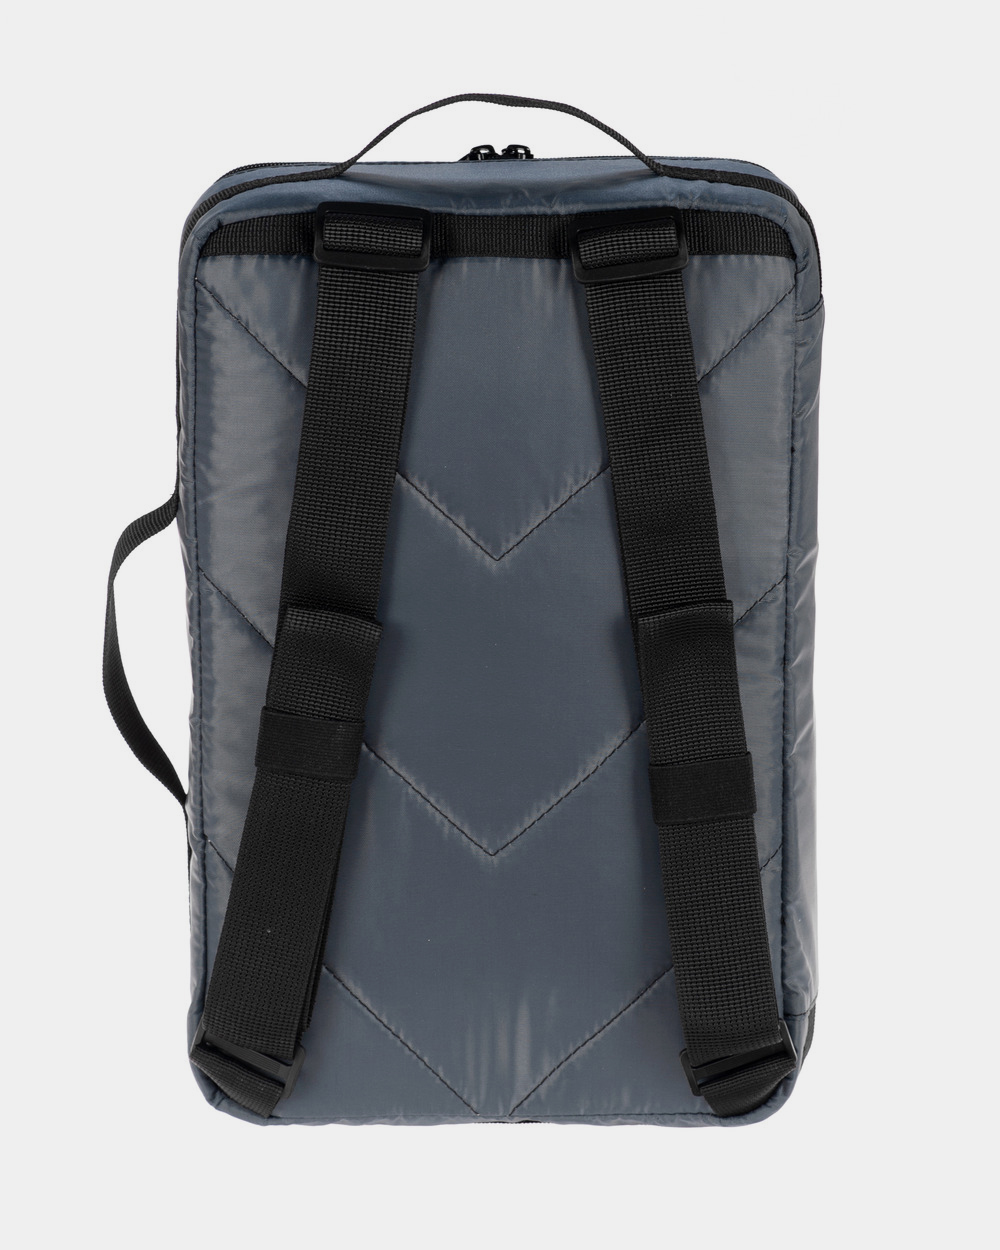 Сумка-рюкзак "Travel Kit", поліестер, сіра